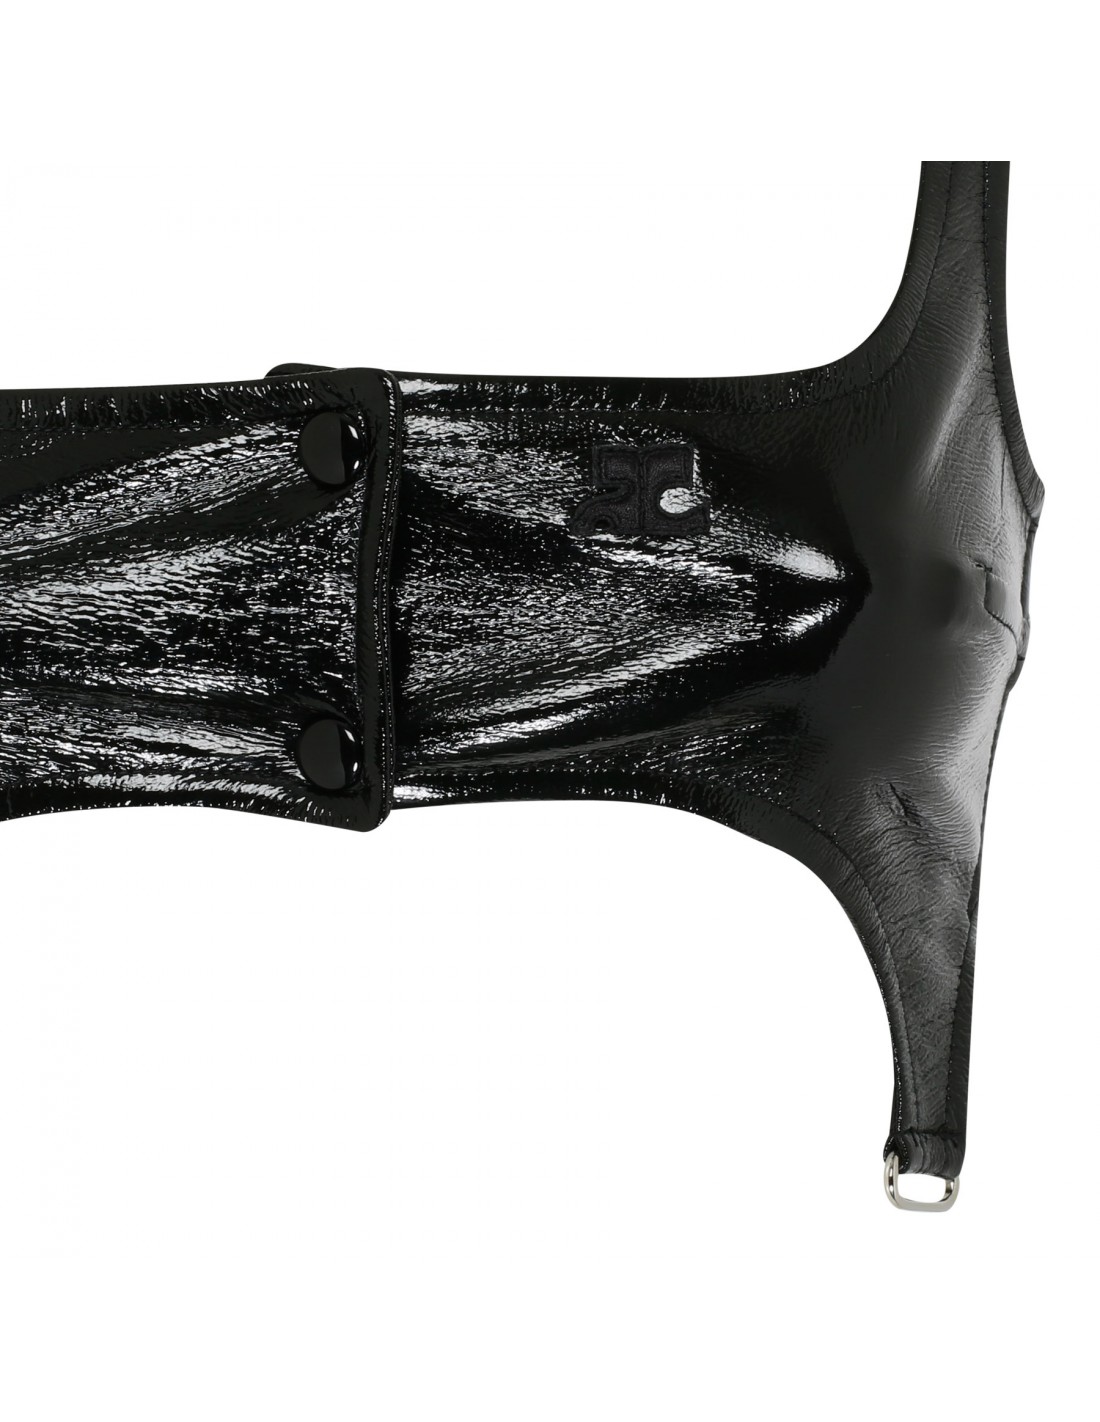 Black vinyl suspenders bra